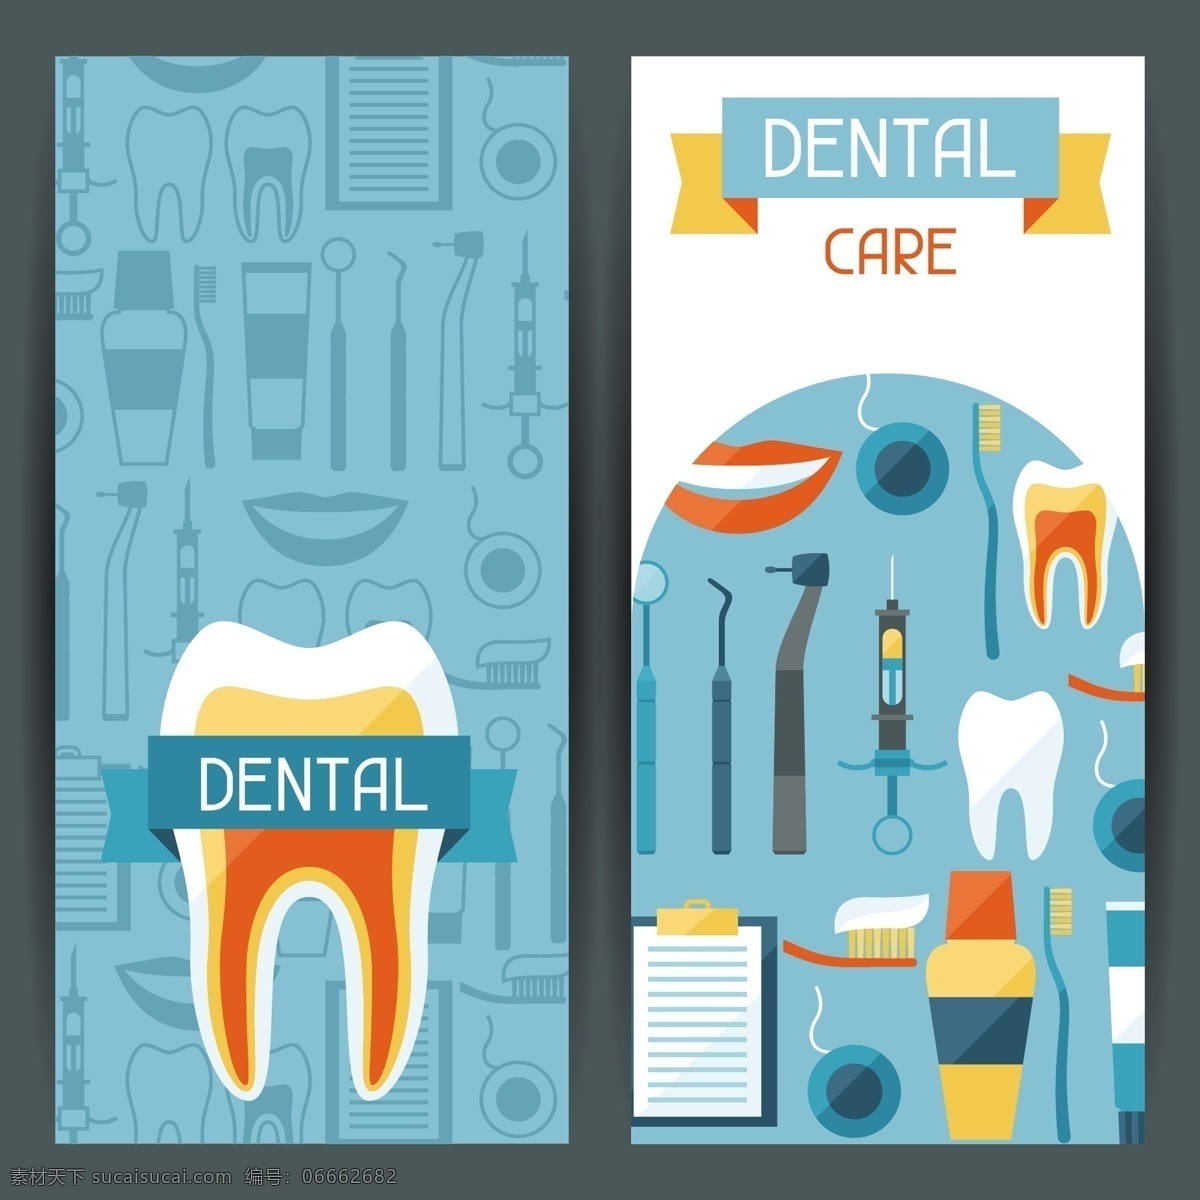 卡通 牙医 诊所 保护 牙齿 系列 矢量 矢量素材 设计素材 背景素材